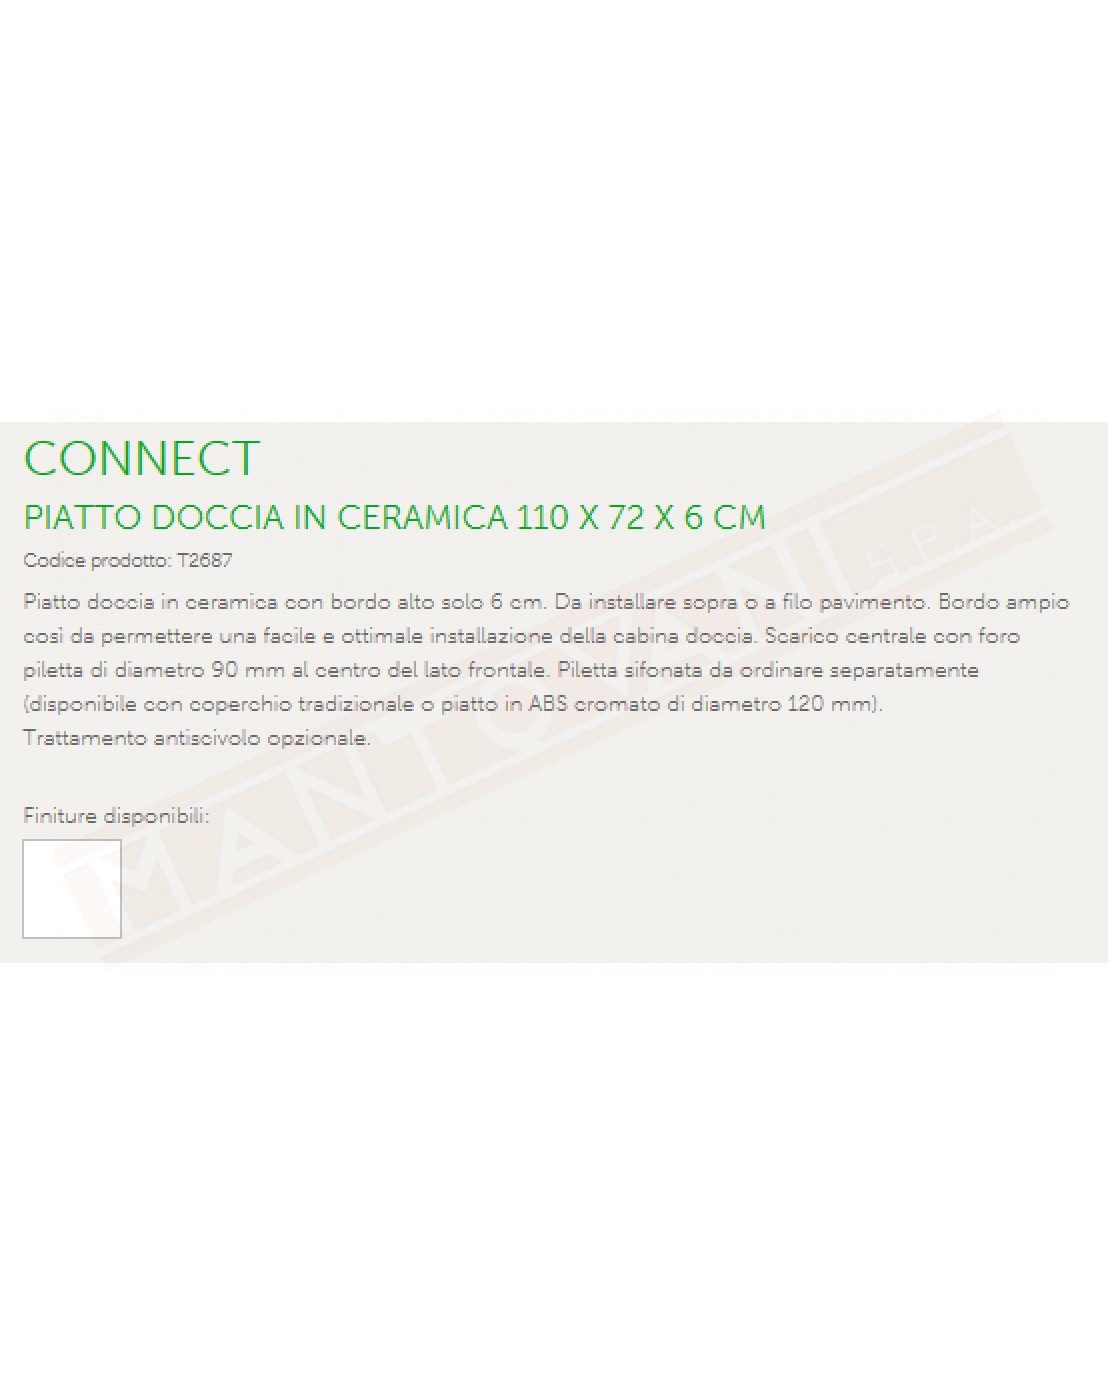 IDEAL STANDARD PIATTO DOCCIA CONNECT 110x72x6 BEU SCARICO FRONTALE